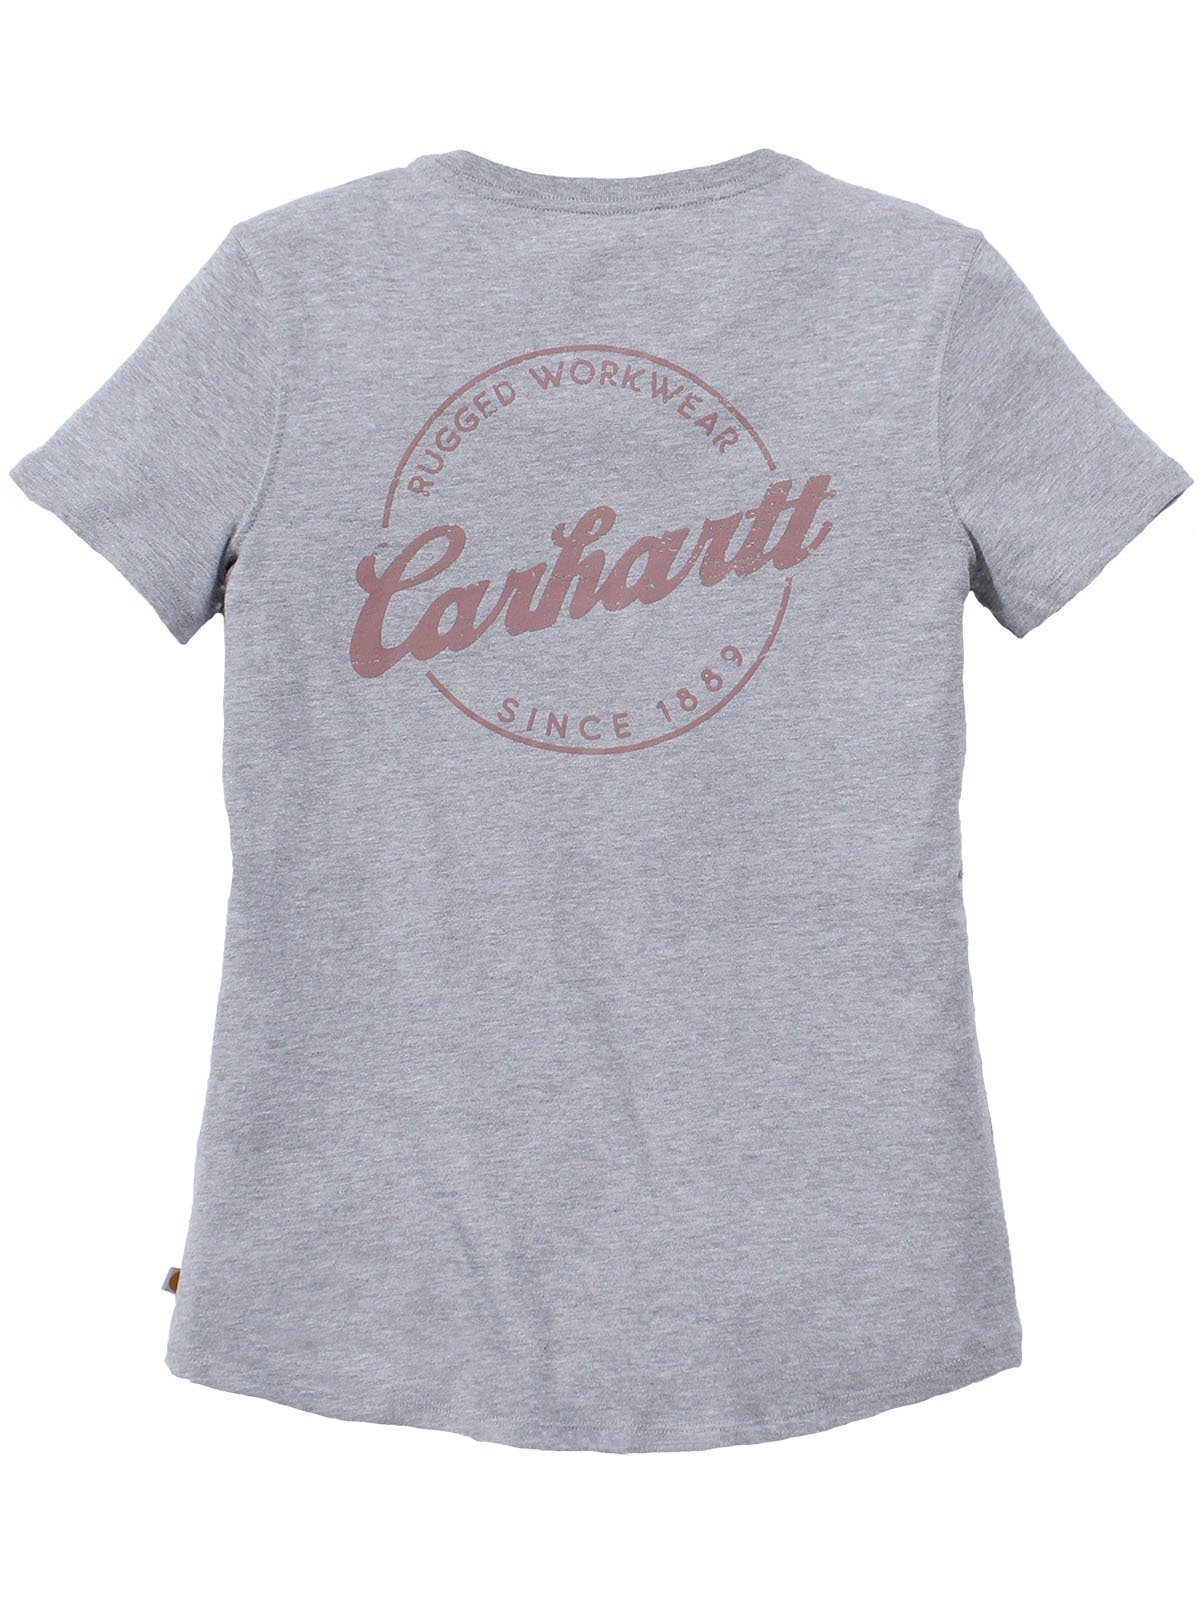 heather V-Neck Carhartt T-Shirt T-Shirt grey Carhartt